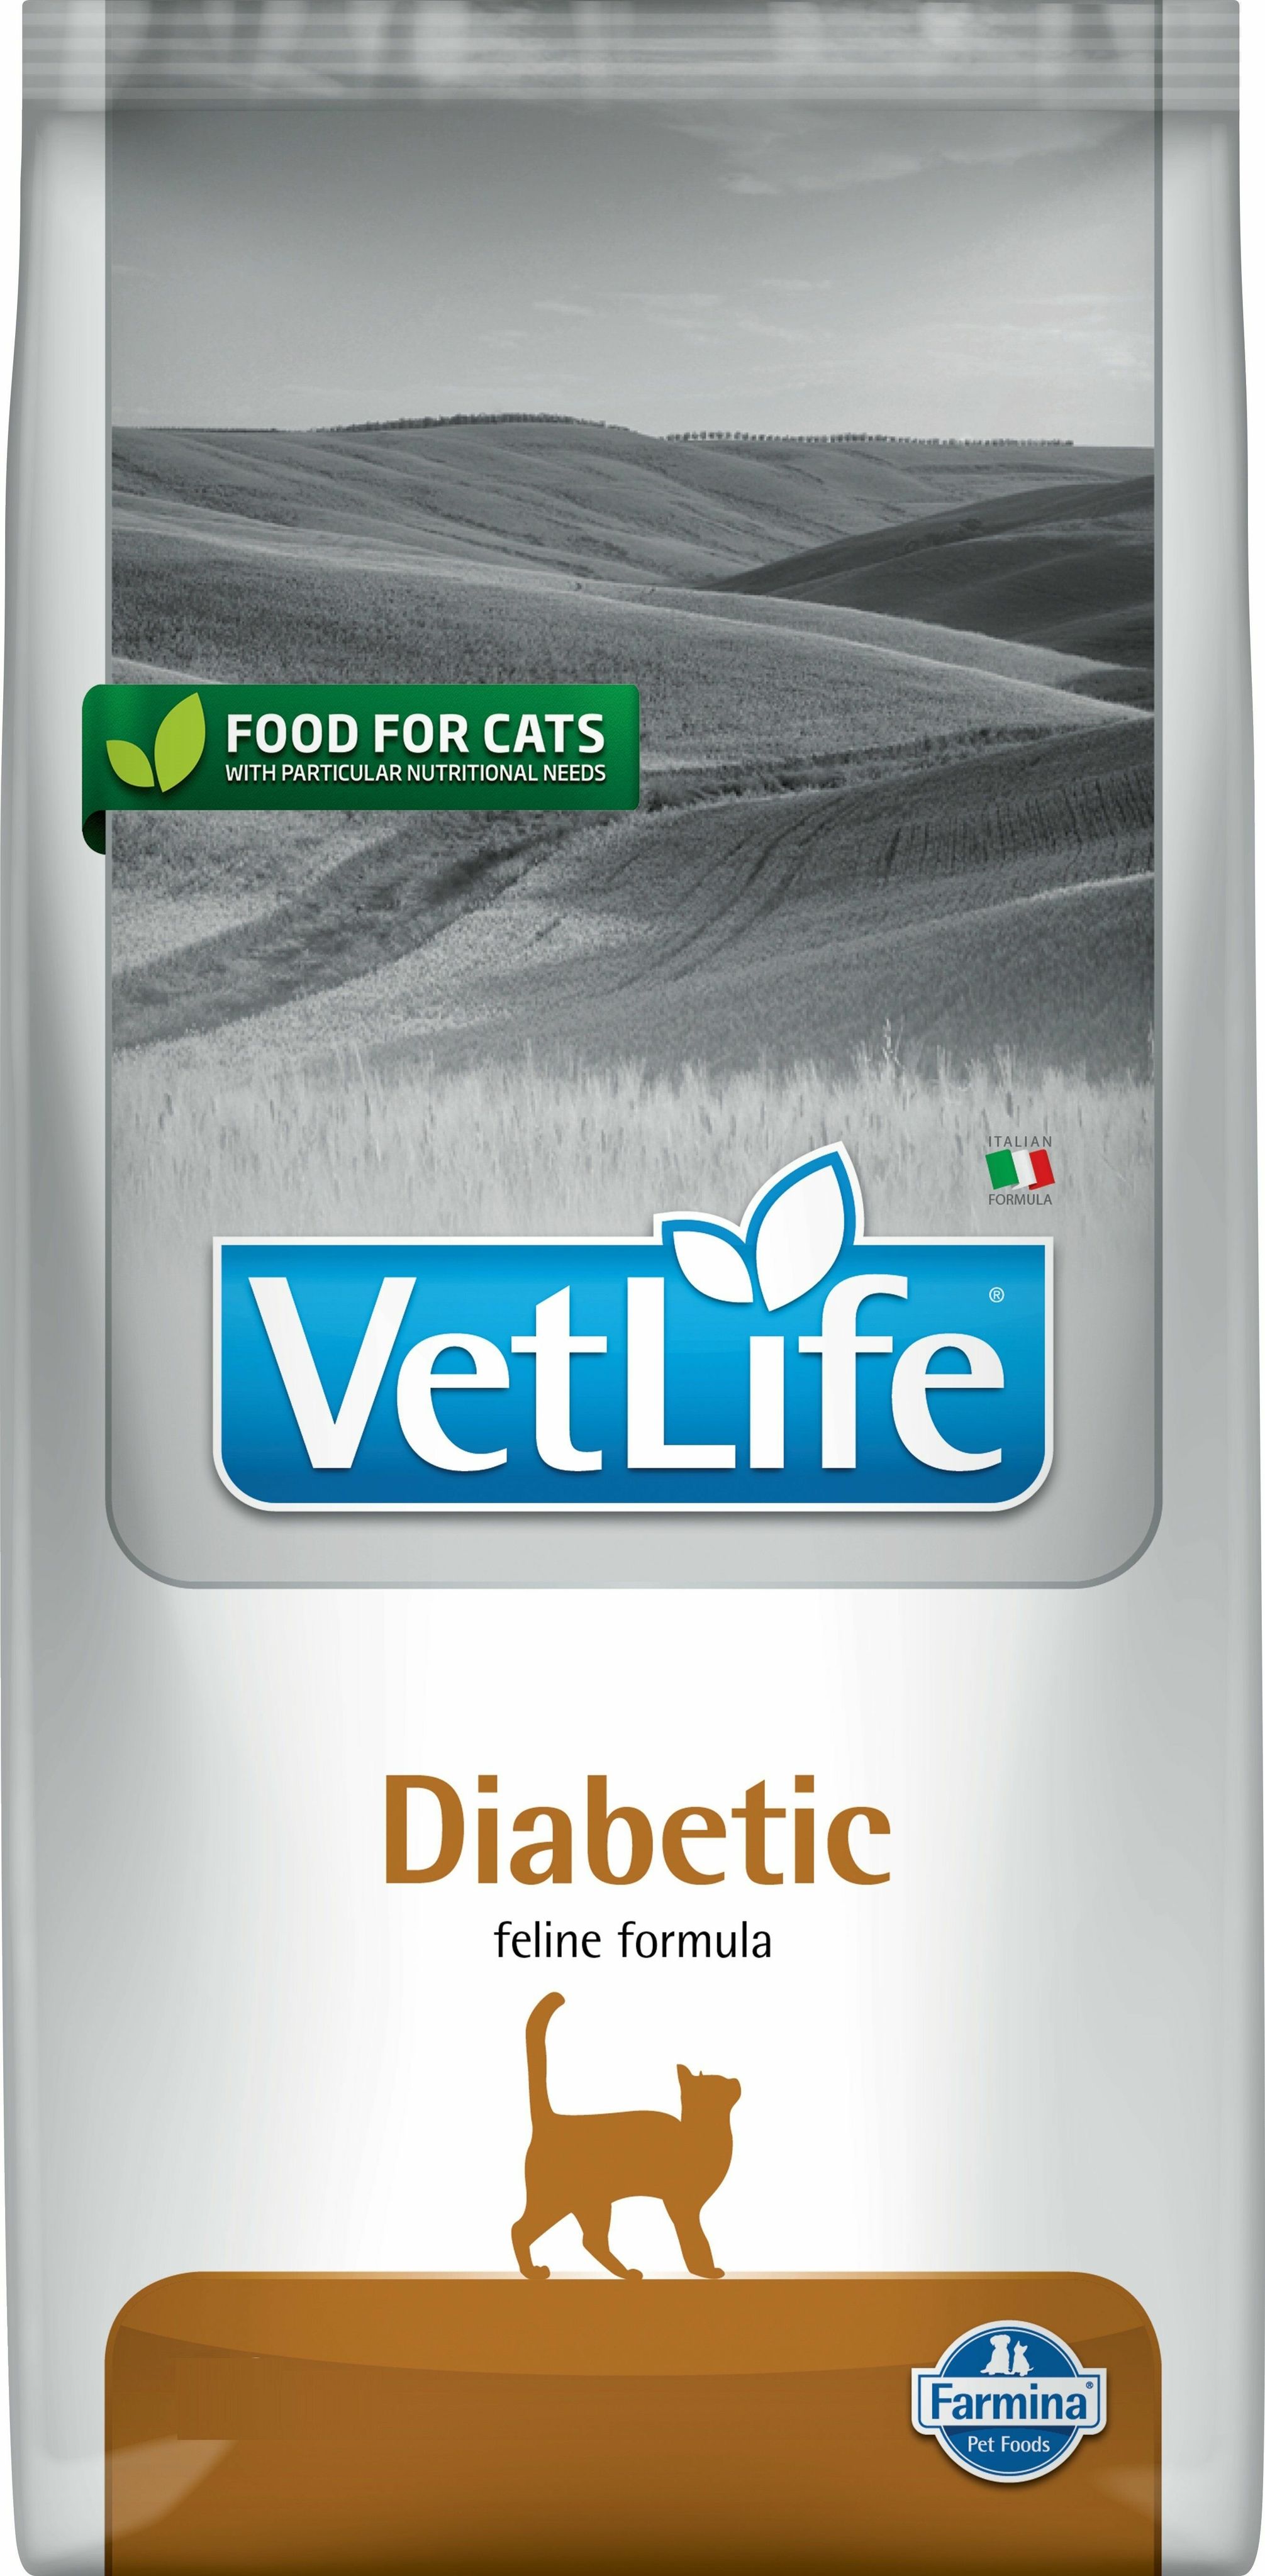 Vet life diabetic